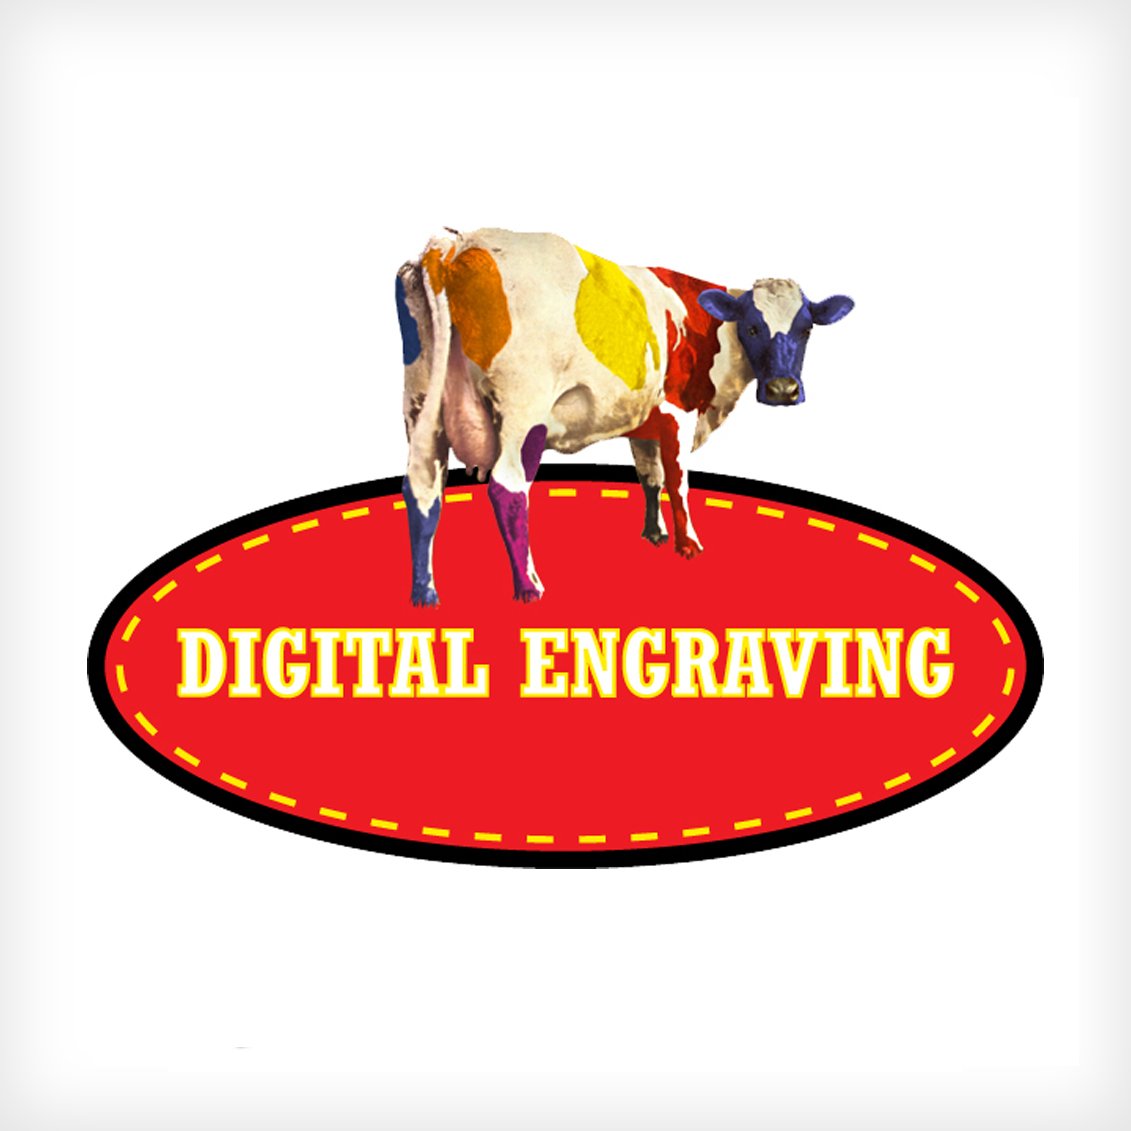 "Digital engraving" Logo